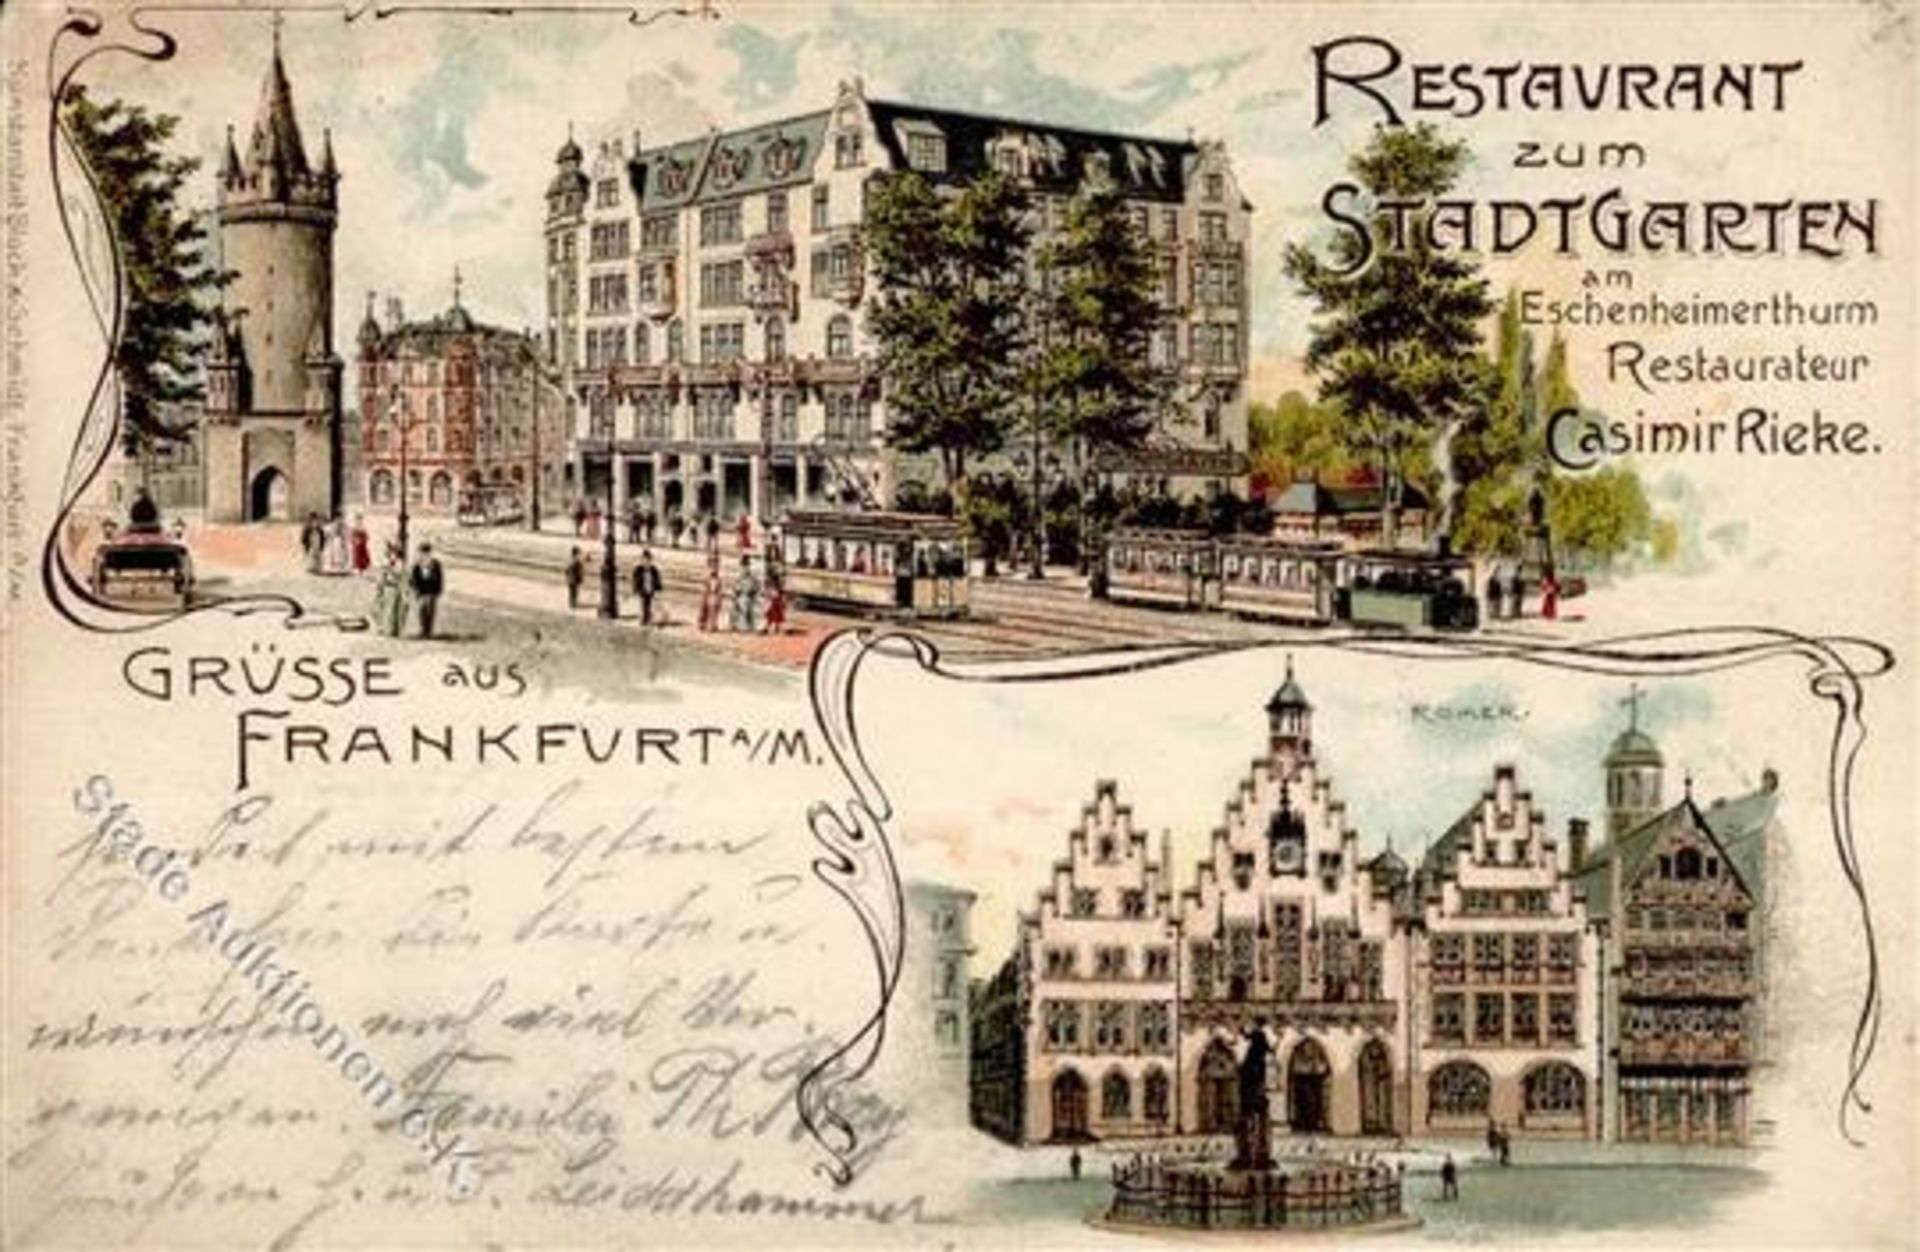 FRANKFURT (6000) - Restaurant zum STADTGARTEN - Ecke gestoßen IIDieses Los wird in einer online-